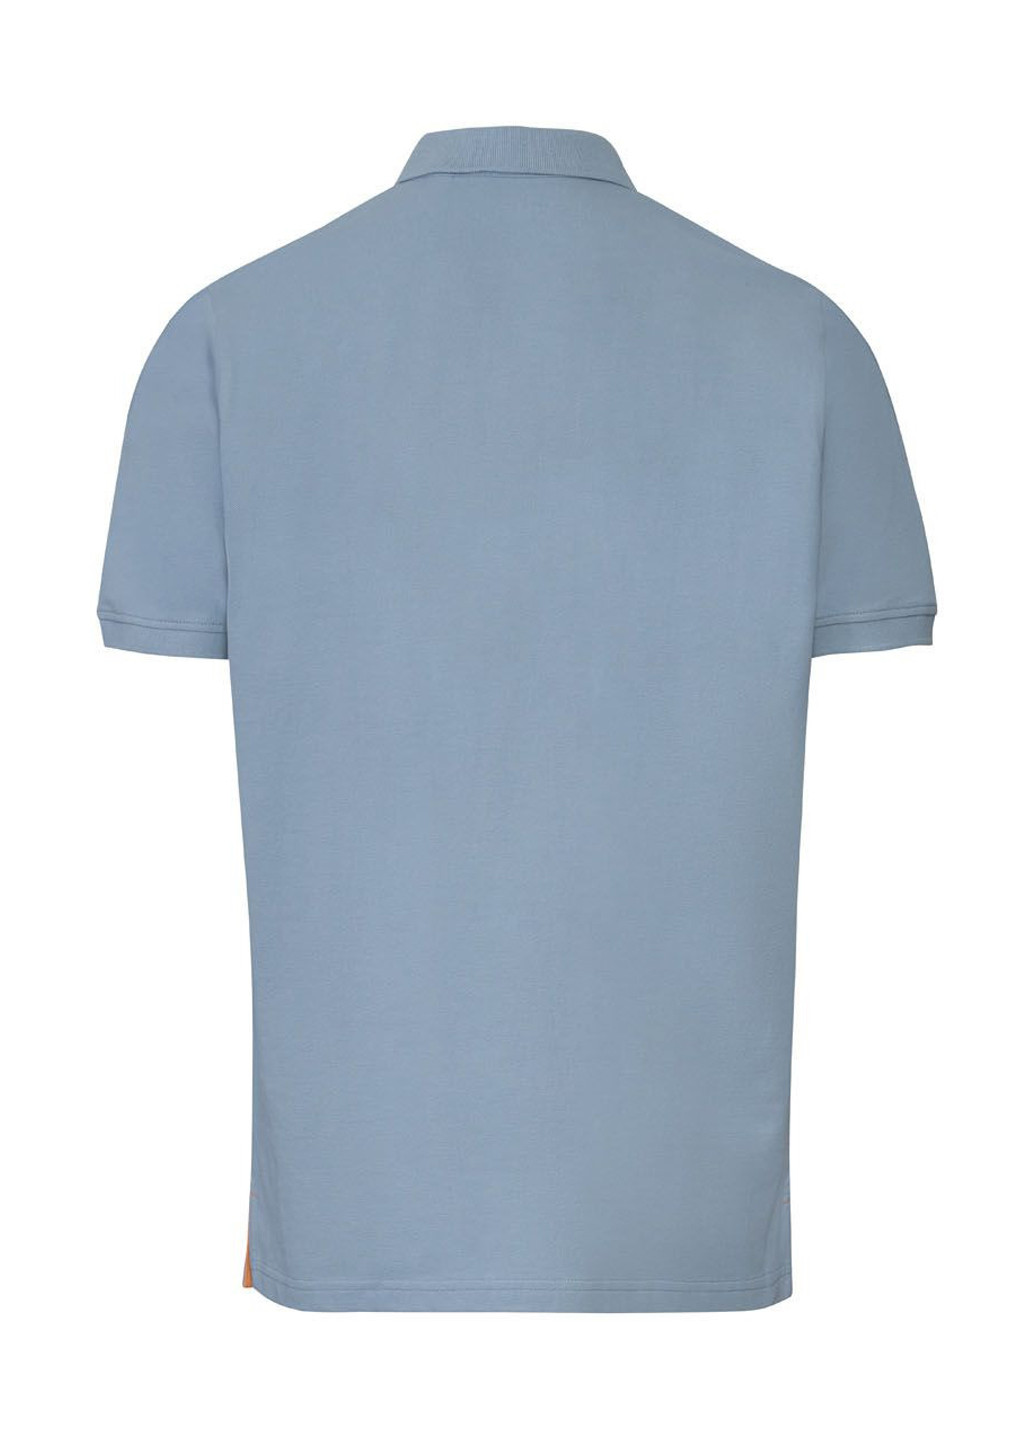 Голубой футболка-поло для мужчин Livergy с надписью